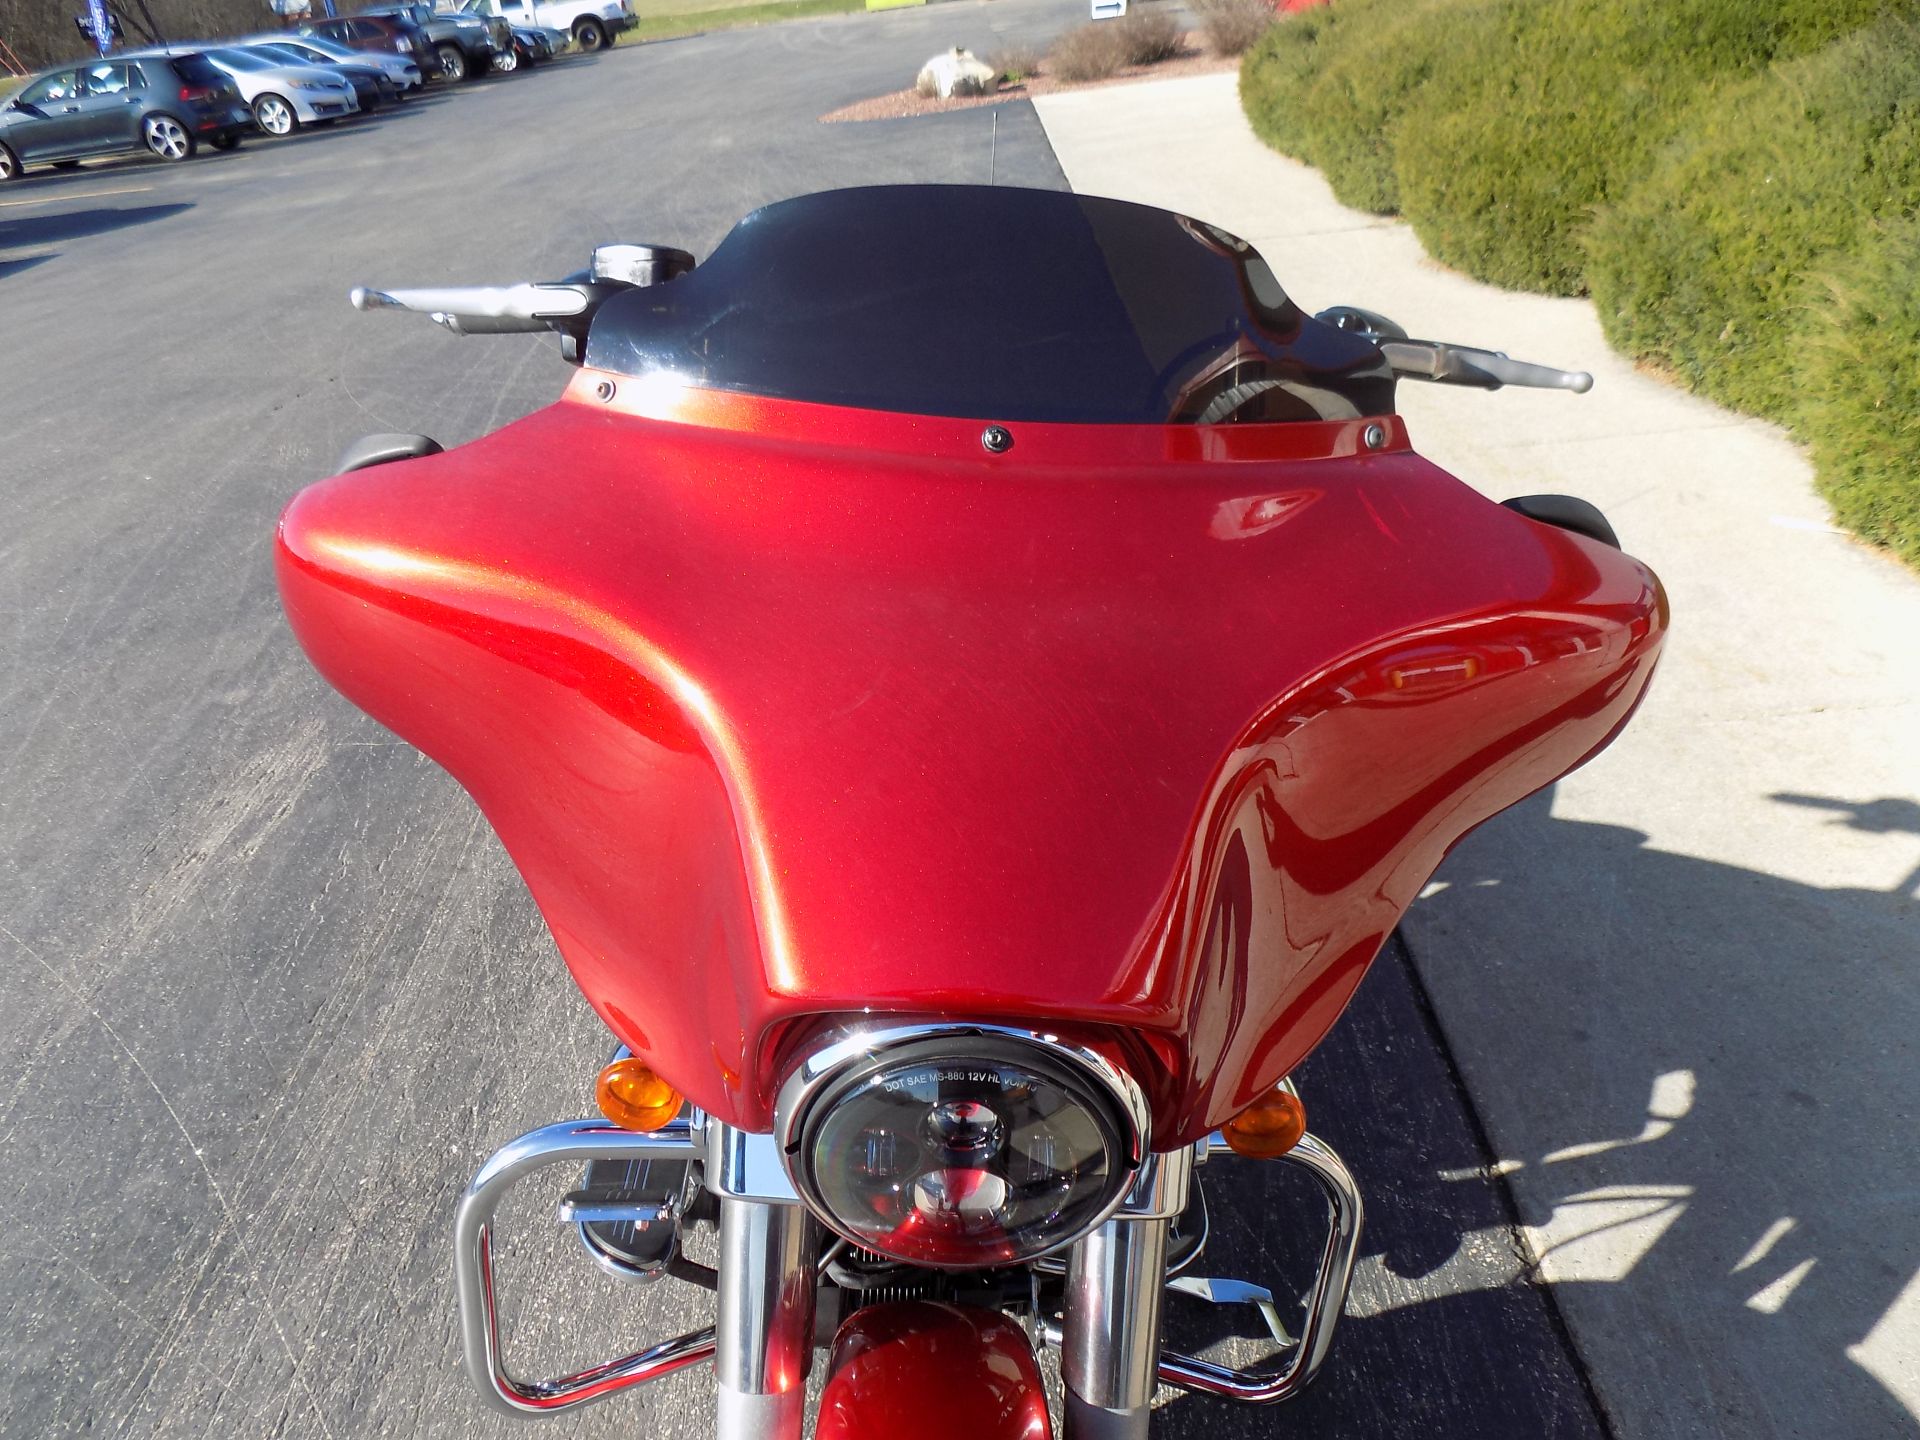 2013 Harley-Davidson Street Glide® in Janesville, Wisconsin - Photo 12